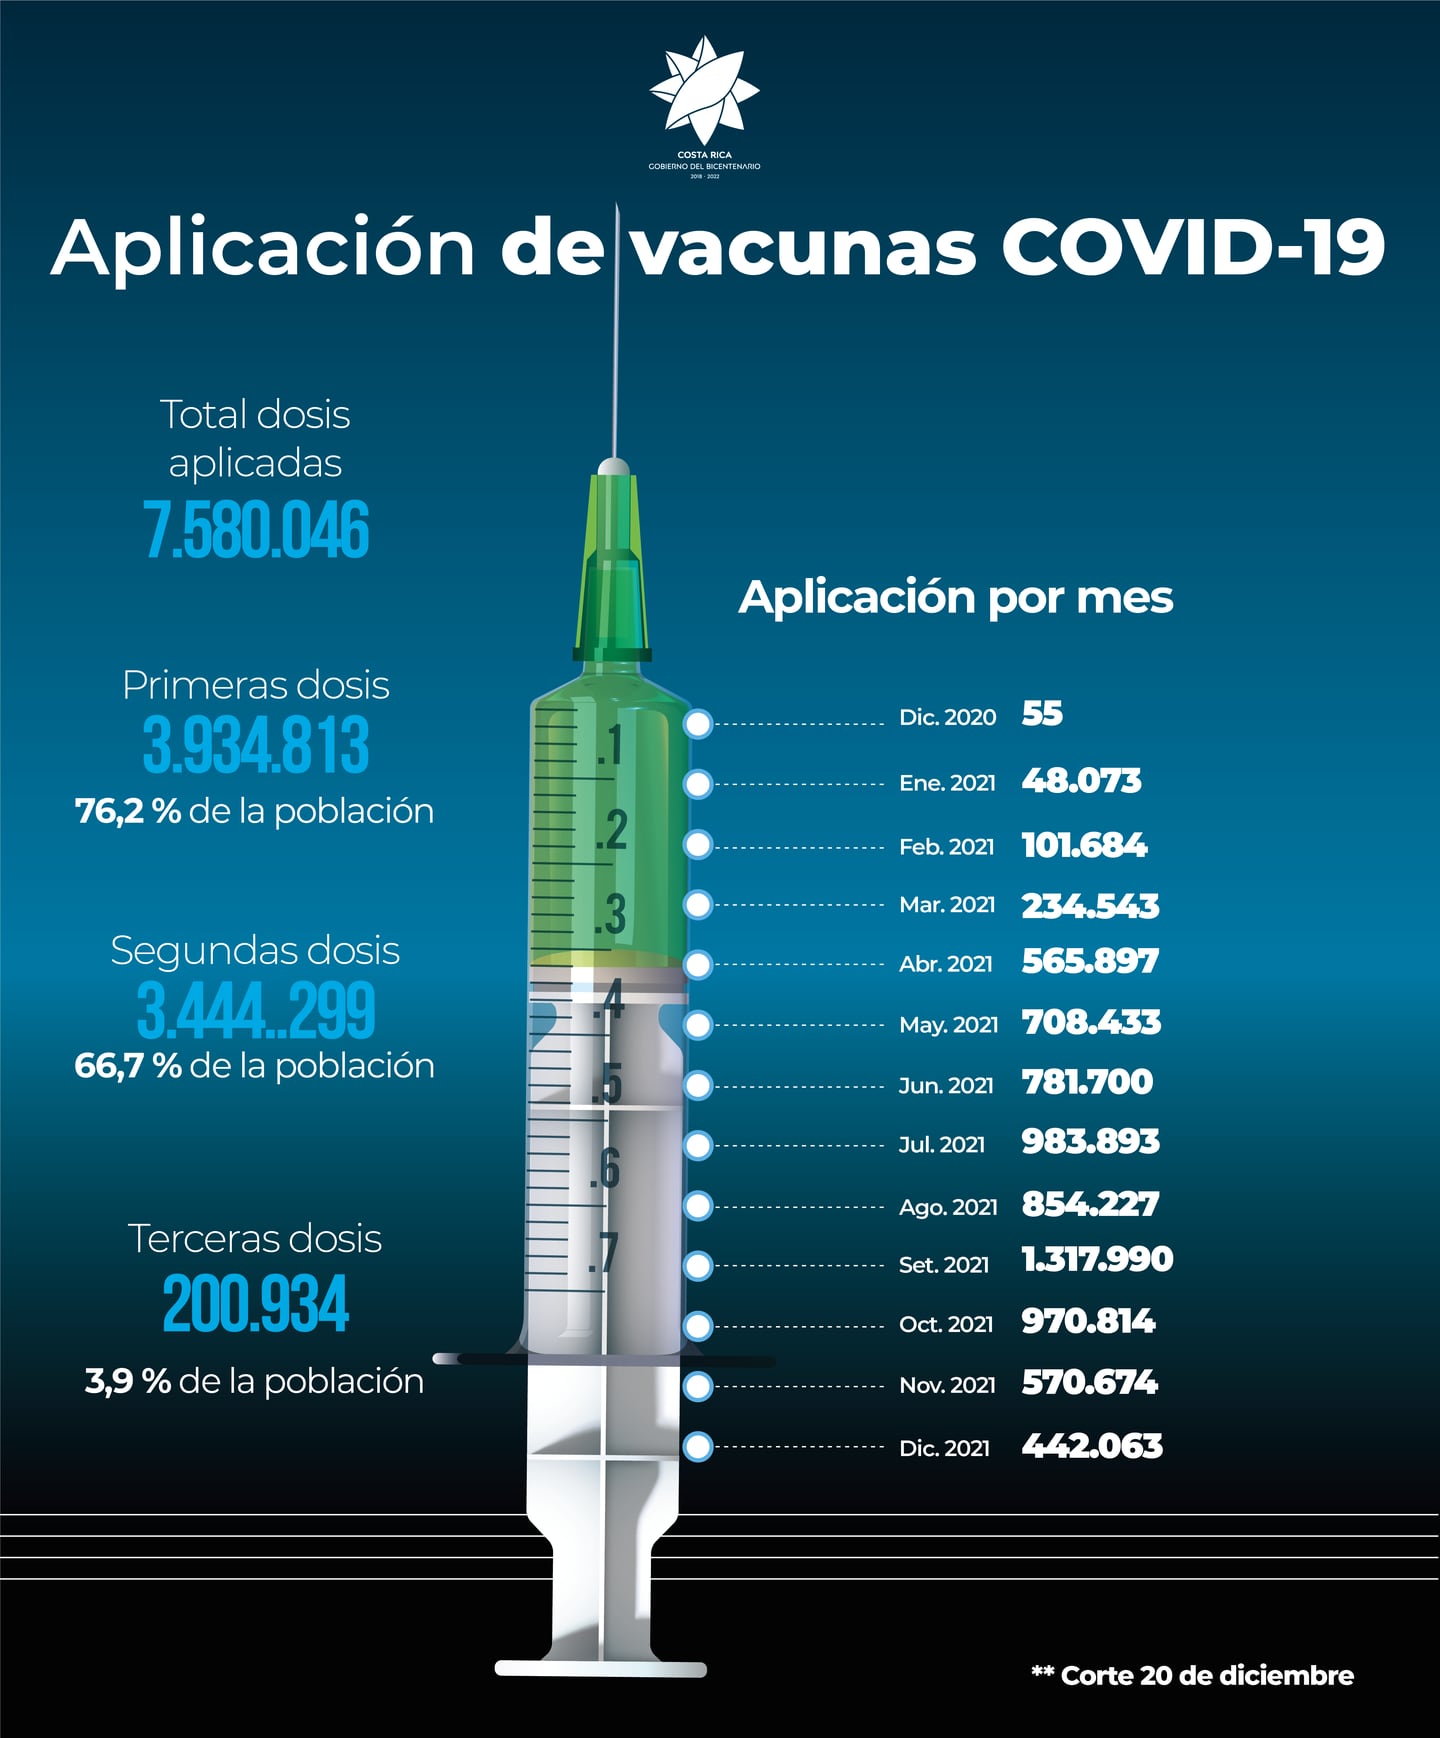 El país cumplió un año de vacunar contra la covid-19 el pasado 24 de diciembre y de acuerdo a los datos al 26 de diciembre, en los 365 días se pusieron más de 7,5 millones de dosis